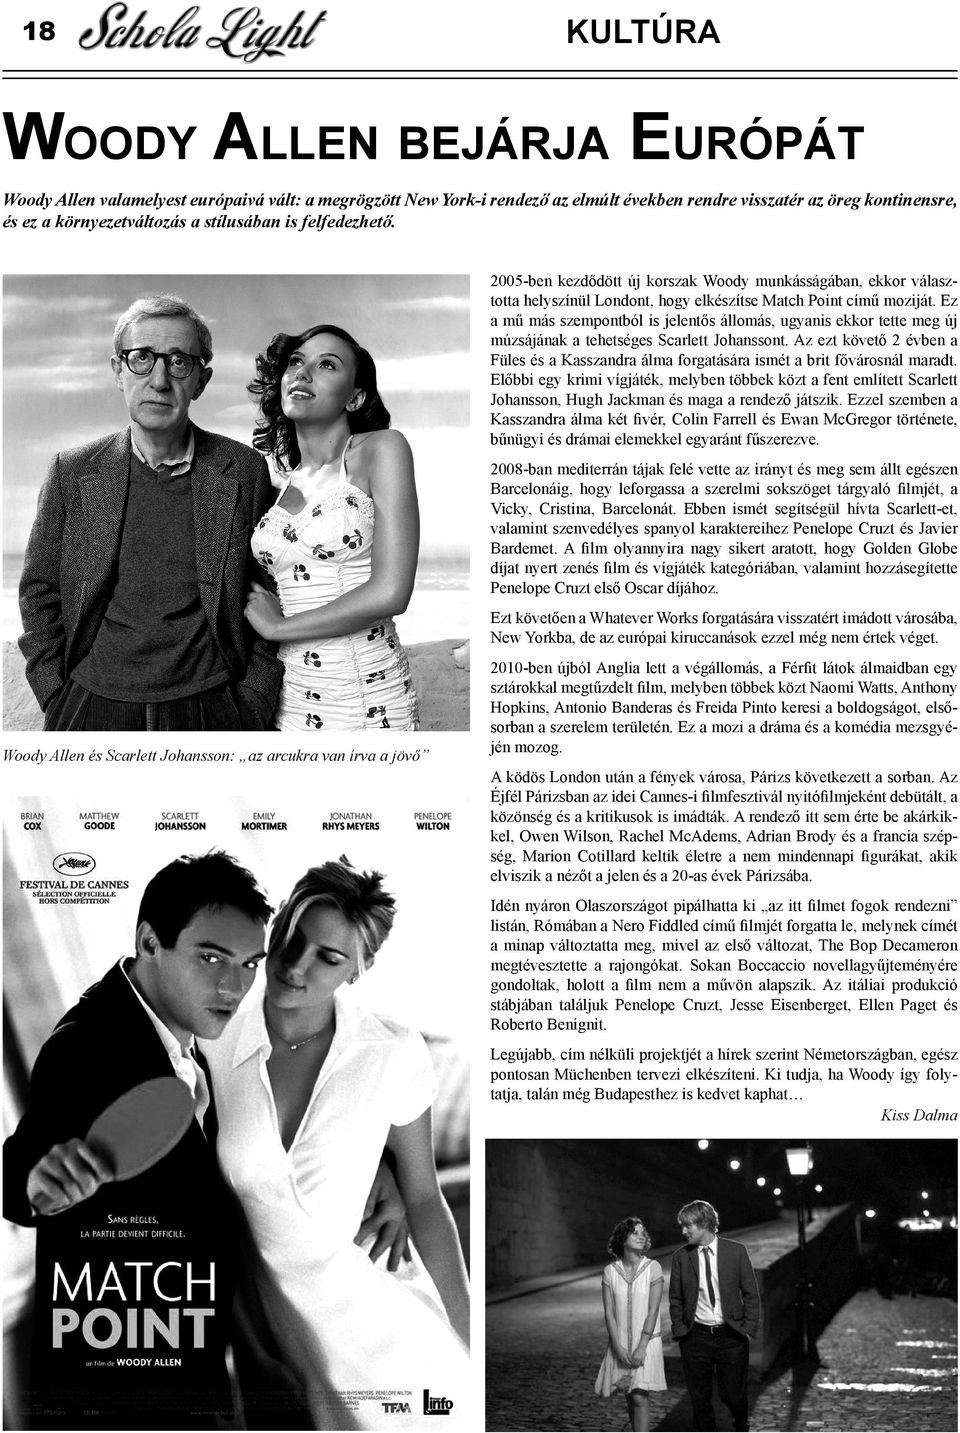 Woody Allen és Scarlett Johansson: az arcukra van írva a jövő 2005-ben kezdődött új korszak Woody munkásságában, ekkor választotta helyszínül Londont, hogy elkészítse Match Point című moziját.